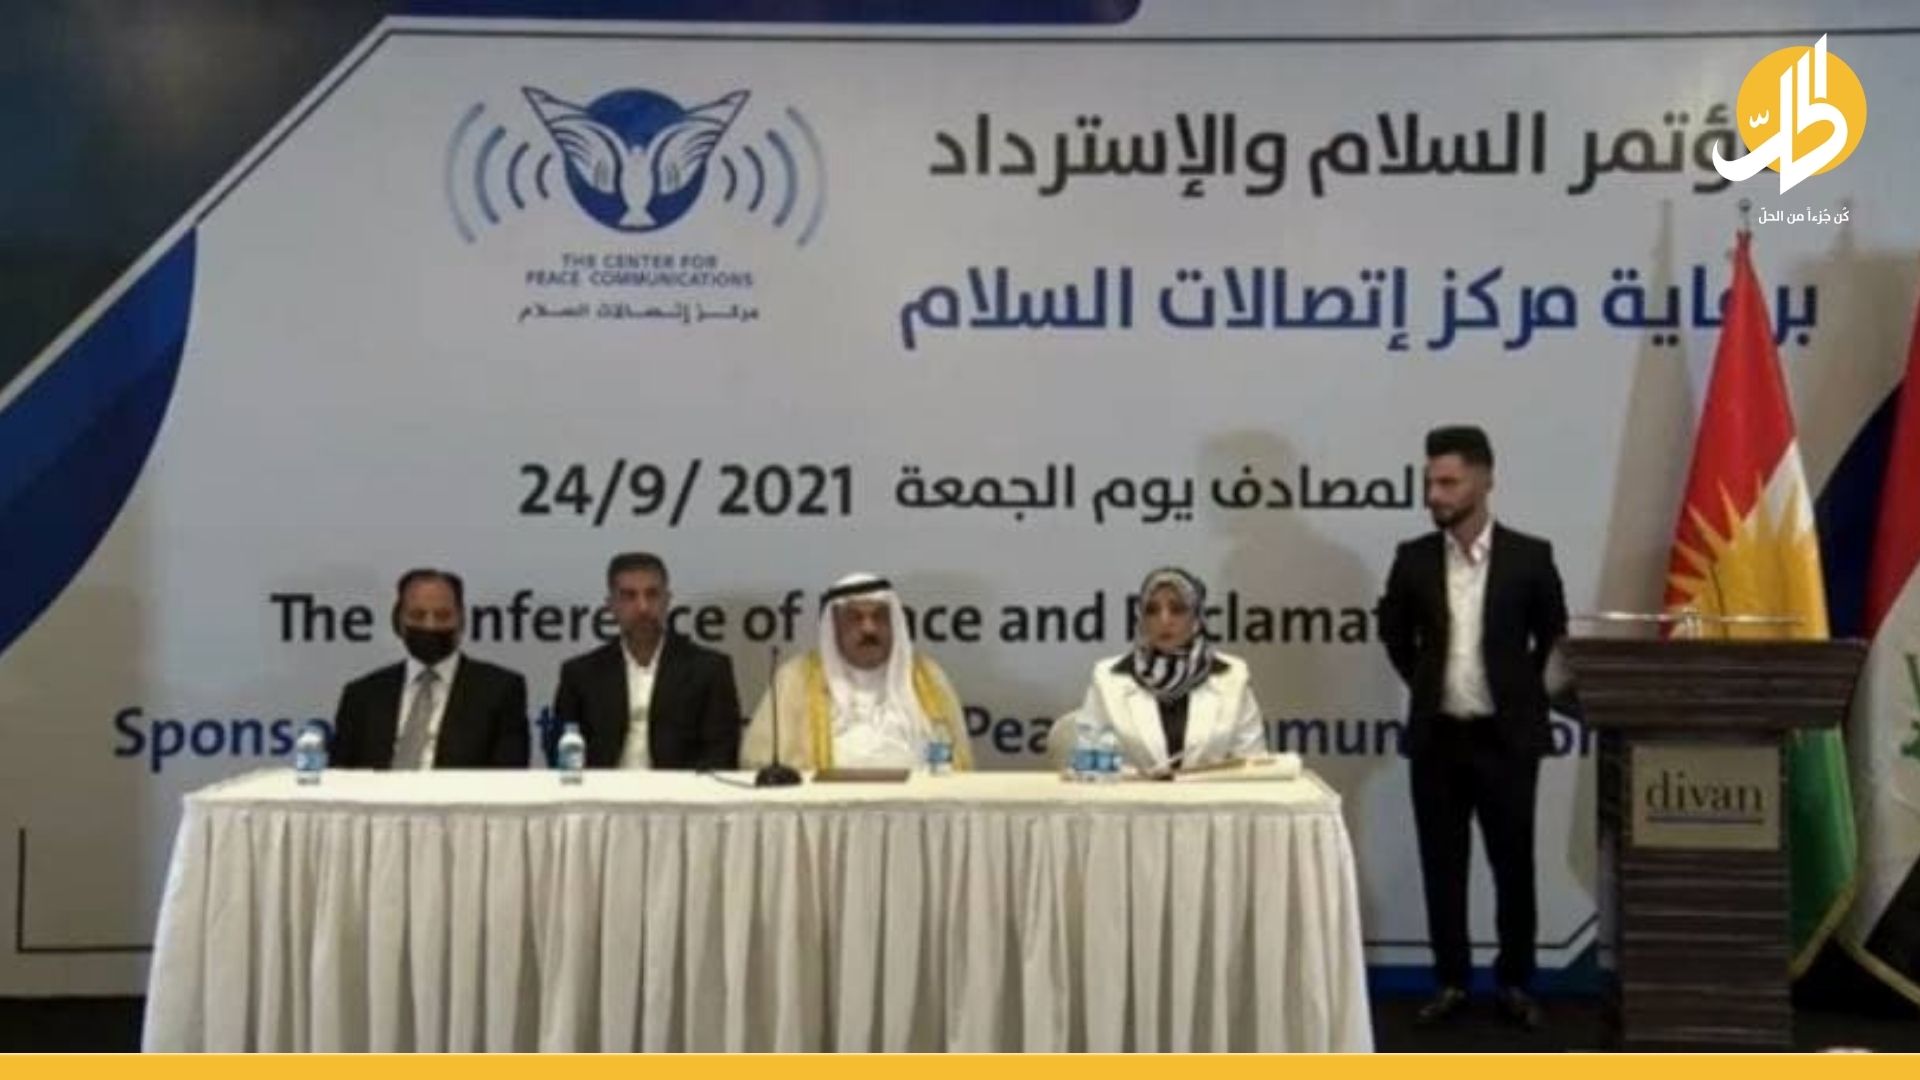 العراق: استنكار واسع لمؤتمر التطبيع مع إسرائيل.. ومطالبات بملاحقة قانونية للمشاركين به